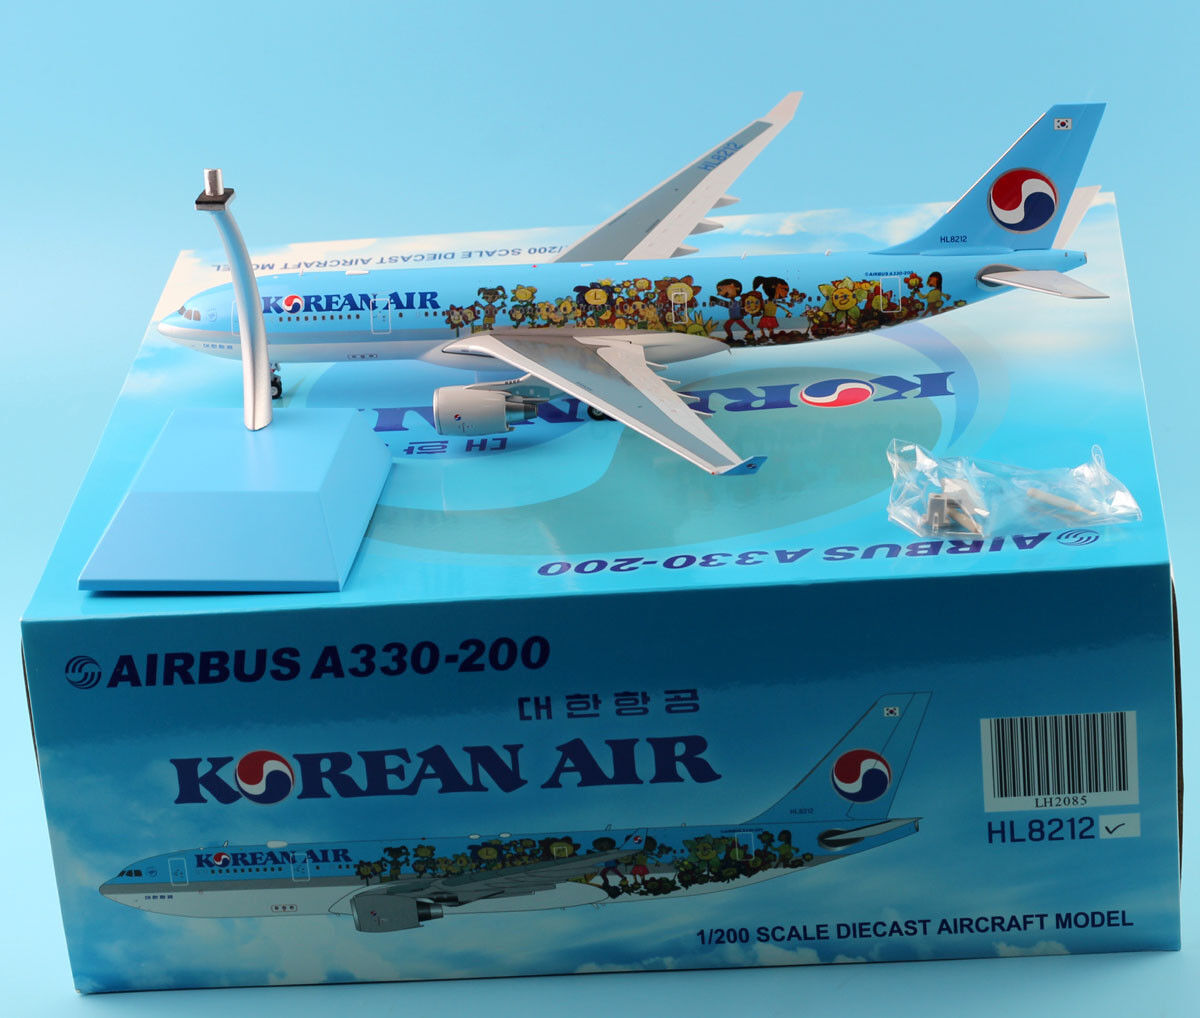 JC Wings 1:200 LH2085 Korean Air Airbus A330-200 Diecast Aircraft Model HL8212